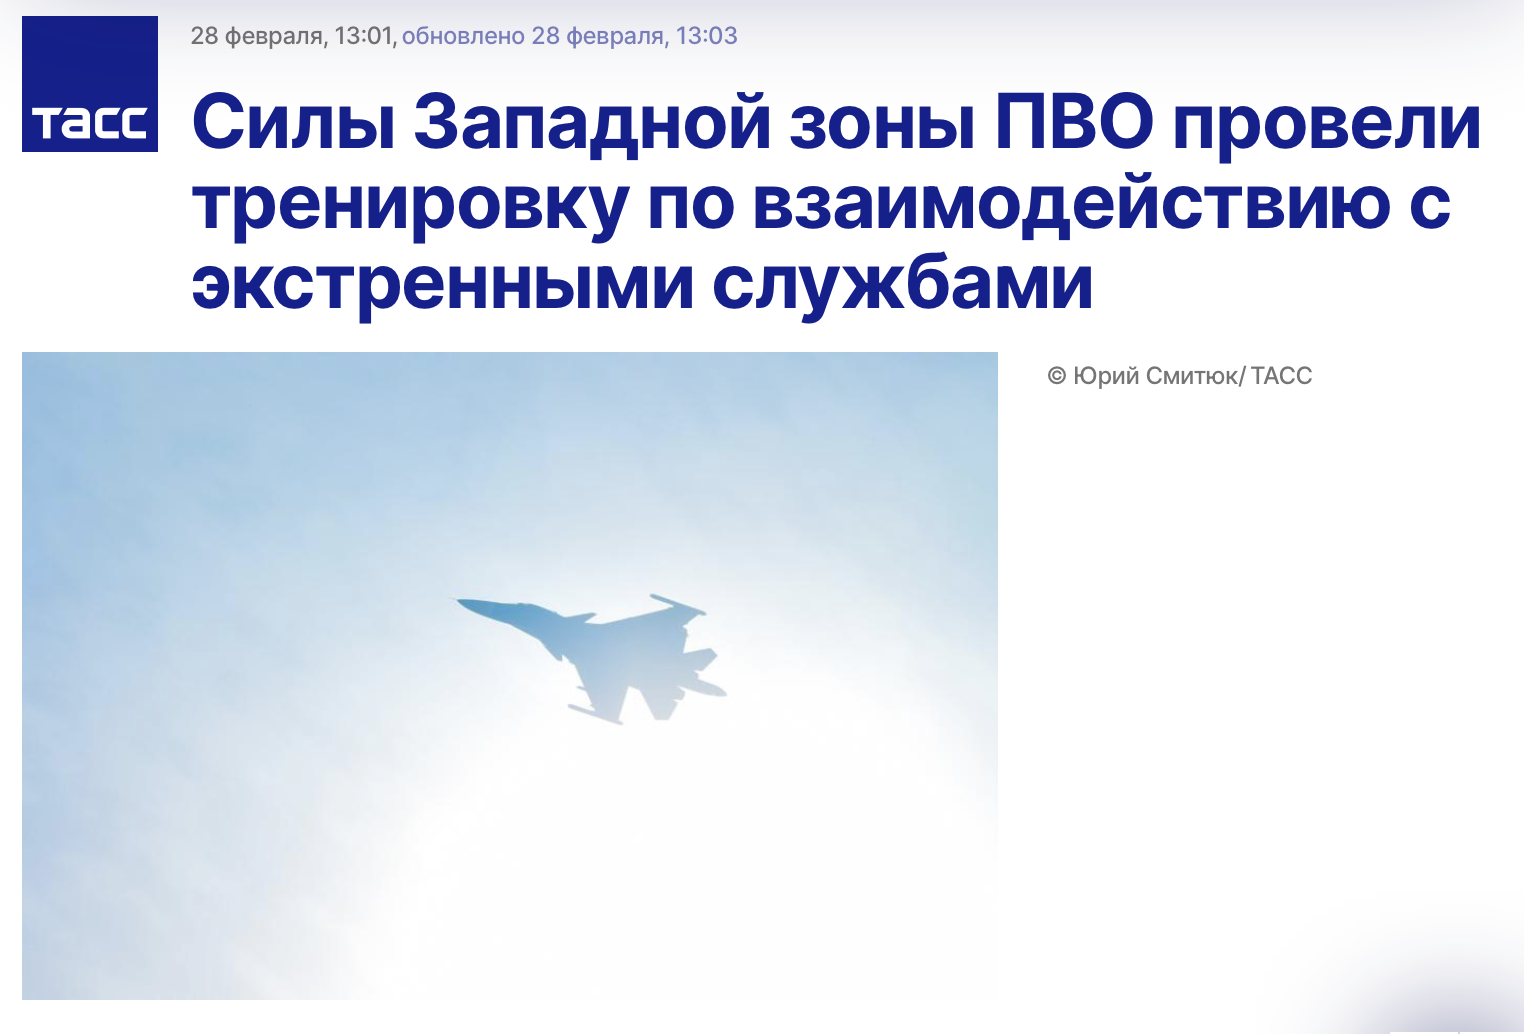 Над Петербургом обнаружили неопознанный летающий объект